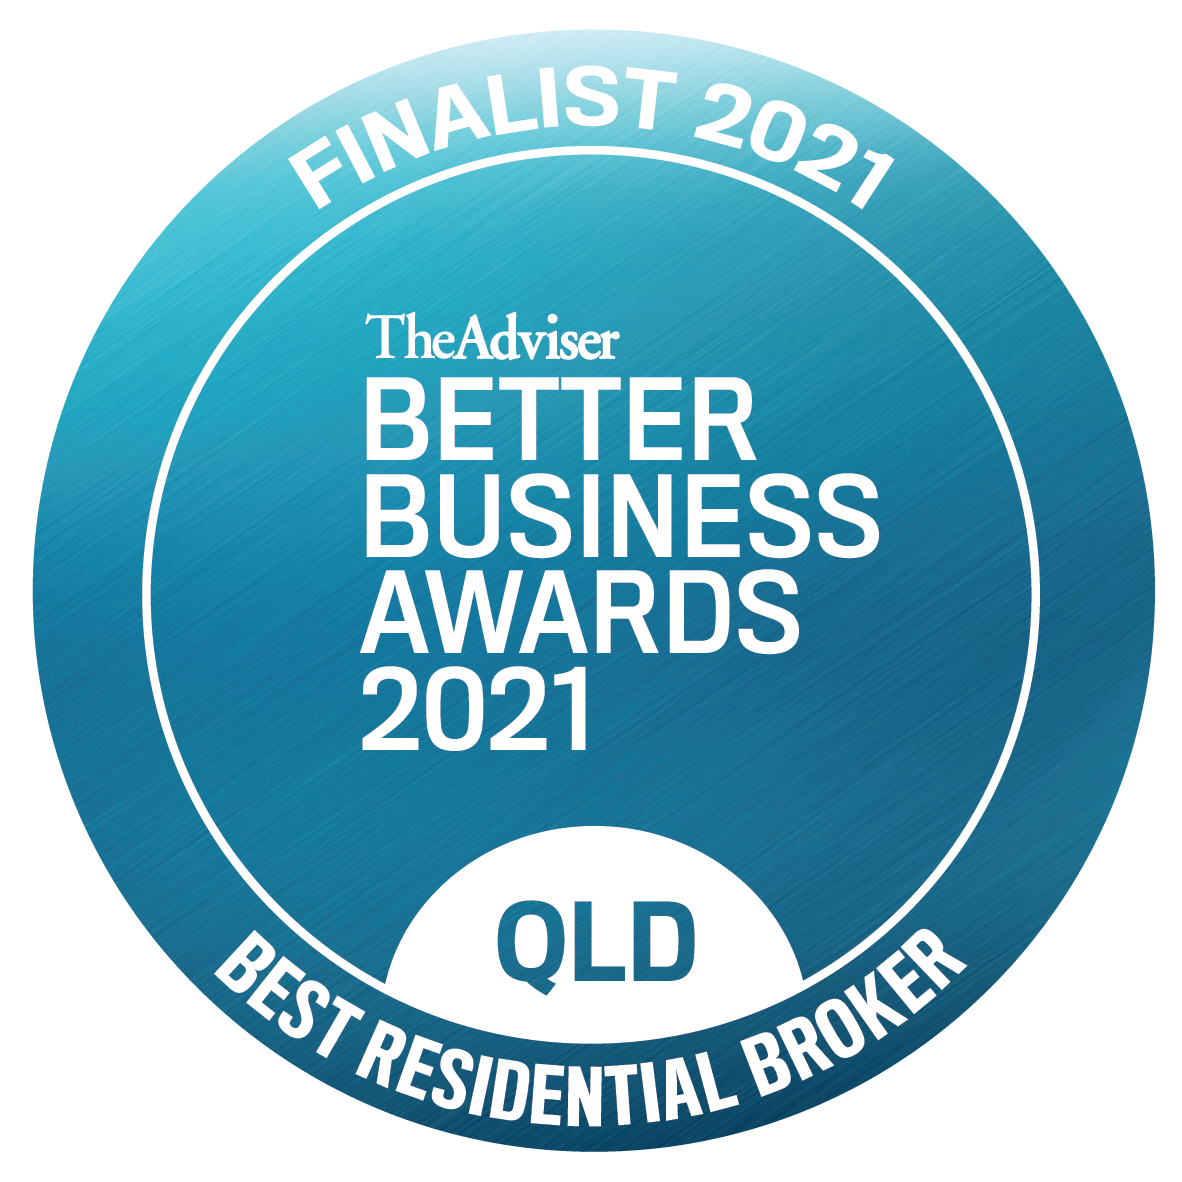 TheAdviser: Better Business Award - 2021 Finalist for Best Residential Broker